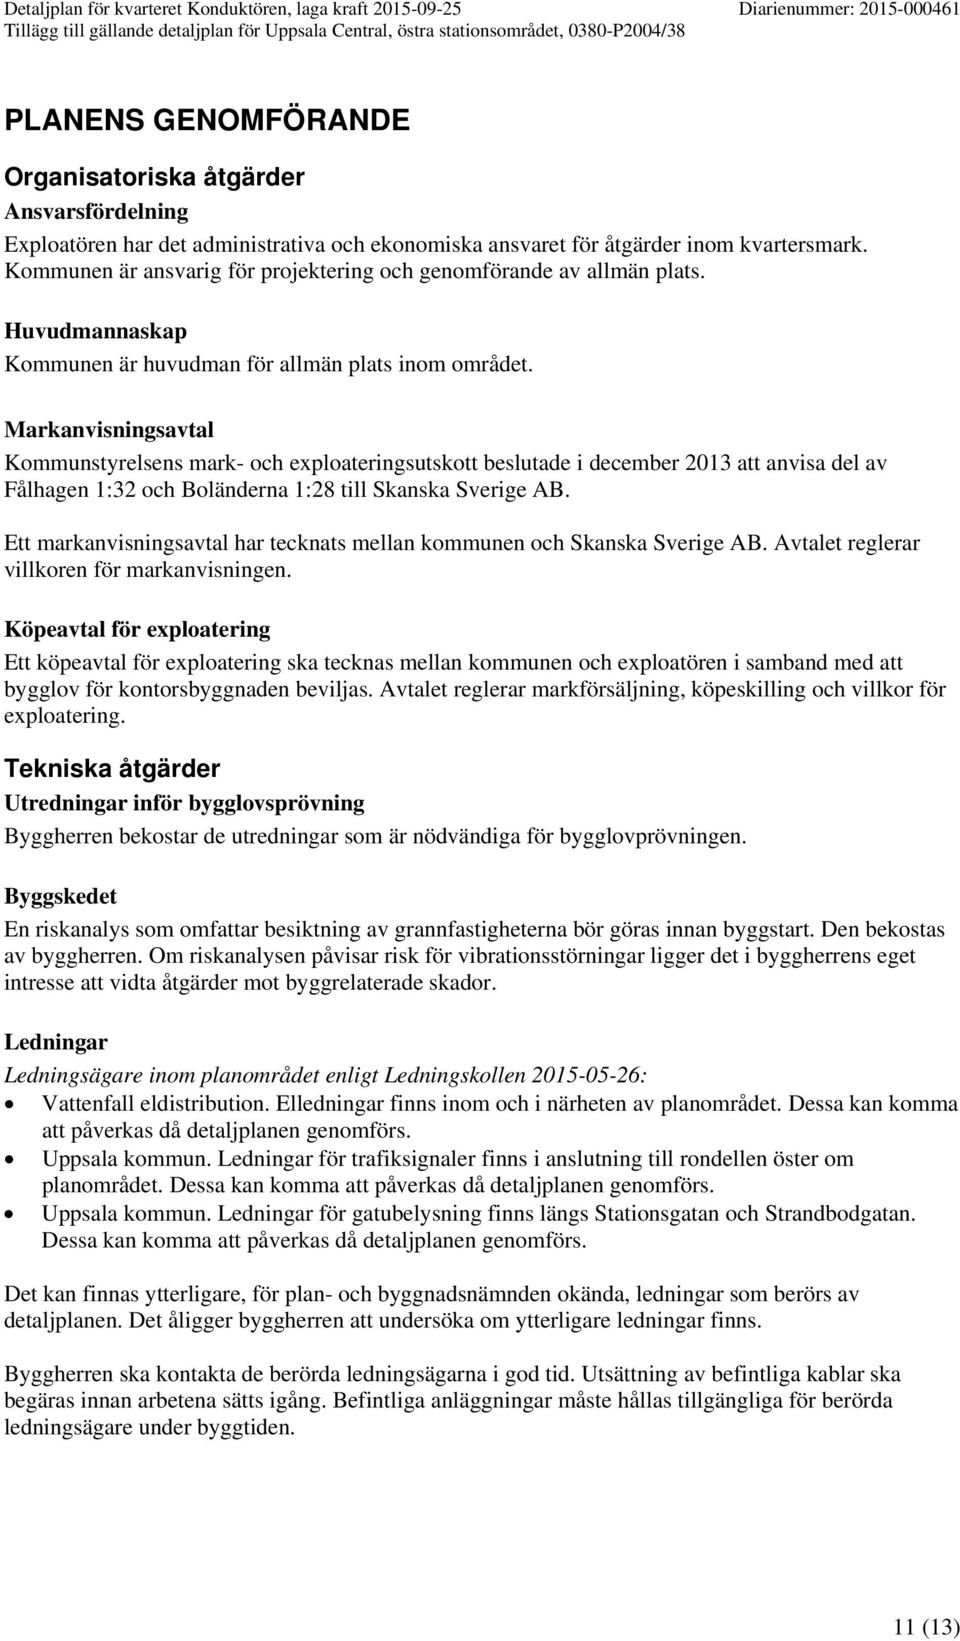 Markanvisningsavtal Kommunstyrelsens mark- och exploateringsutskott beslutade i december 2013 att anvisa del av Fålhagen 1:32 och Boländerna 1:28 till Skanska Sverige AB.